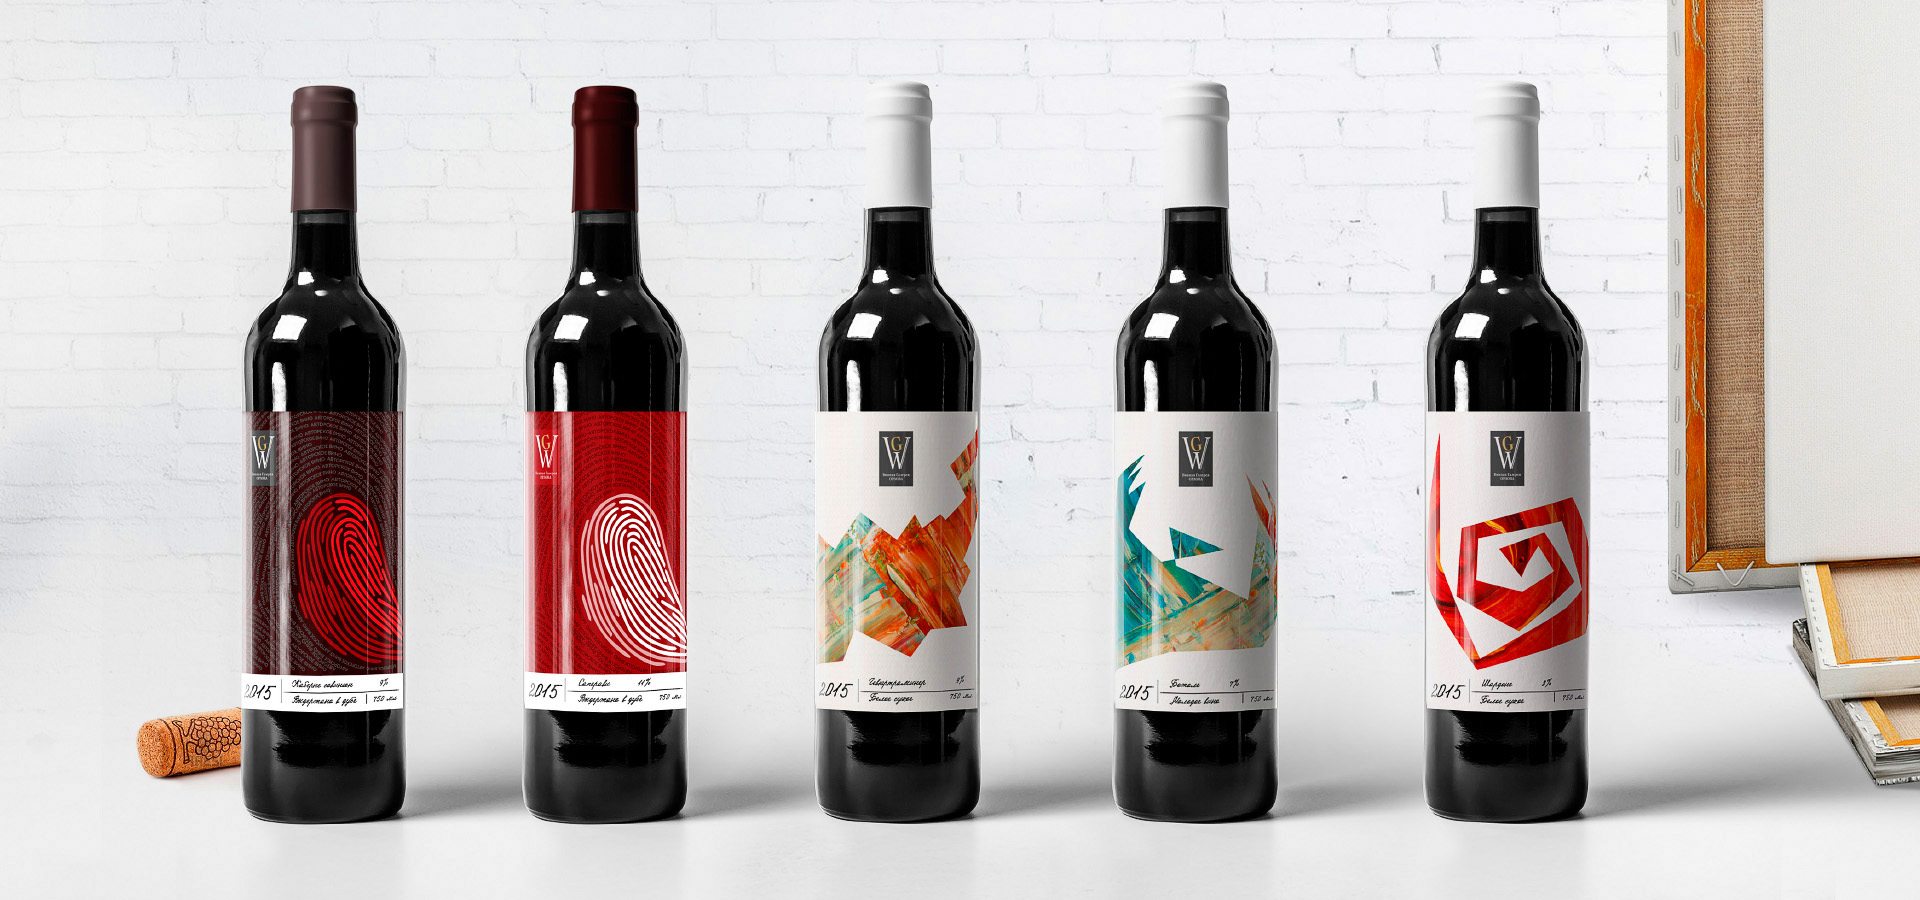 Концепция, разработанная командой профессионалов «Stors», воплощенная в дизайне этикеток линейки частных вин